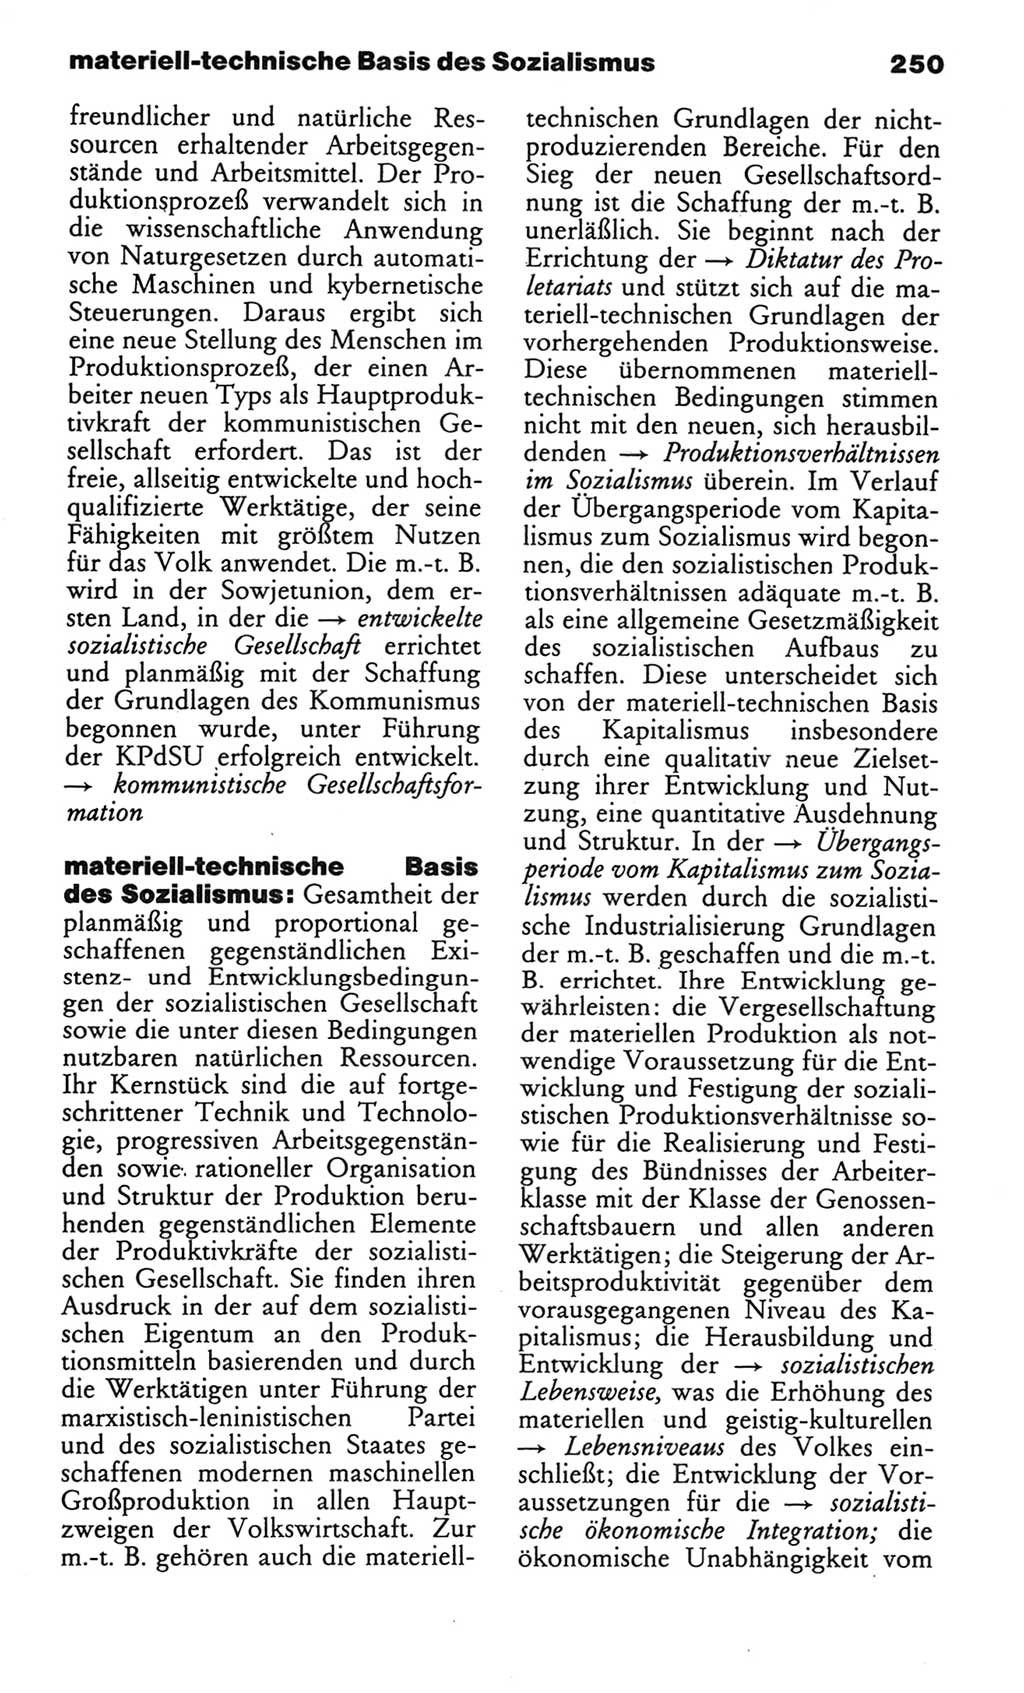 Wörterbuch des wissenschaftlichen Kommunismus [Deutsche Demokratische Republik (DDR)] 1982, Seite 250 (Wb. wiss. Komm. DDR 1982, S. 250)